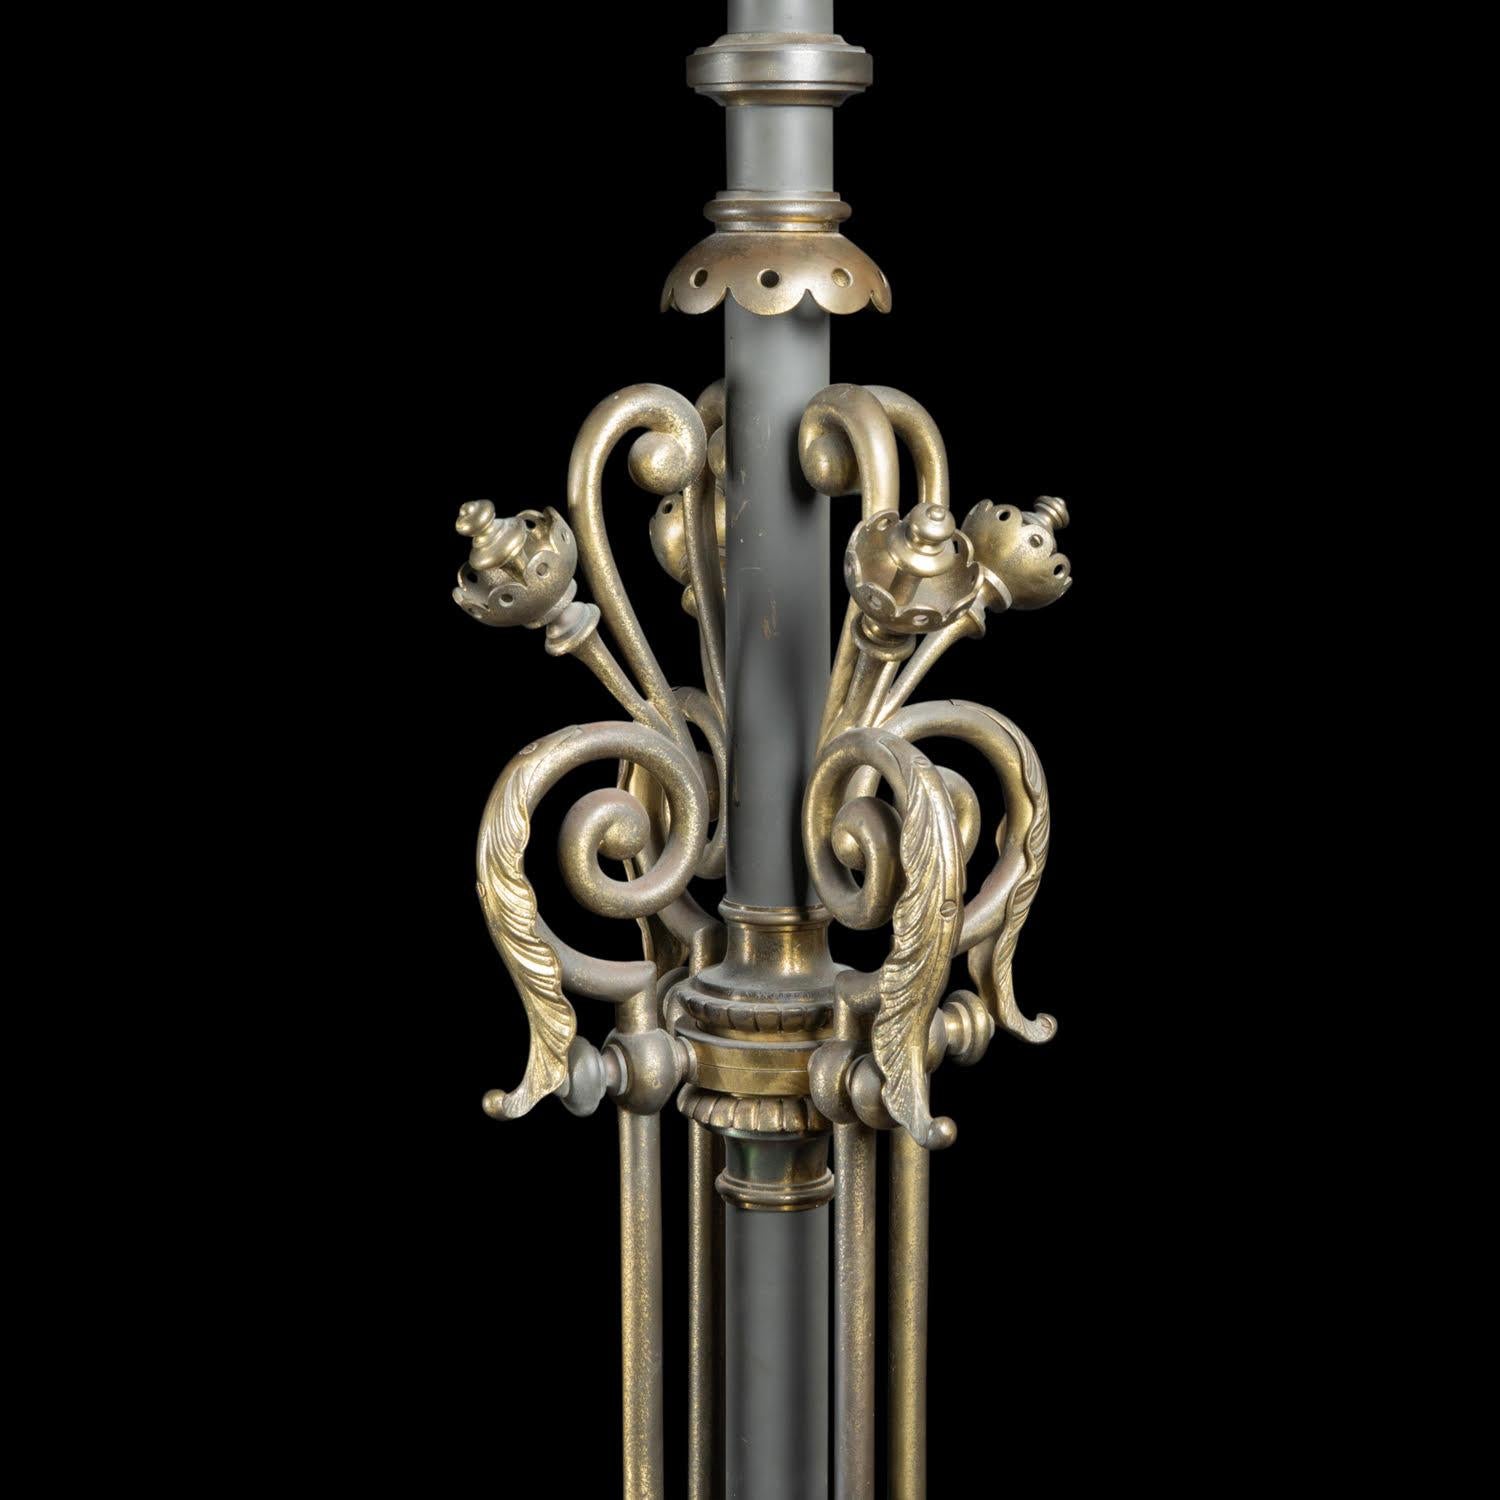 Paar Fackeln, Periode Napoleon III, 19. Jahrhundert.

Paar bronzene Fackeln mit Mahagonisockel, Periode Napoleon III, 19. Jahrhundert.  
H: 188cm, B: 44,5cm, T: 44,5cm